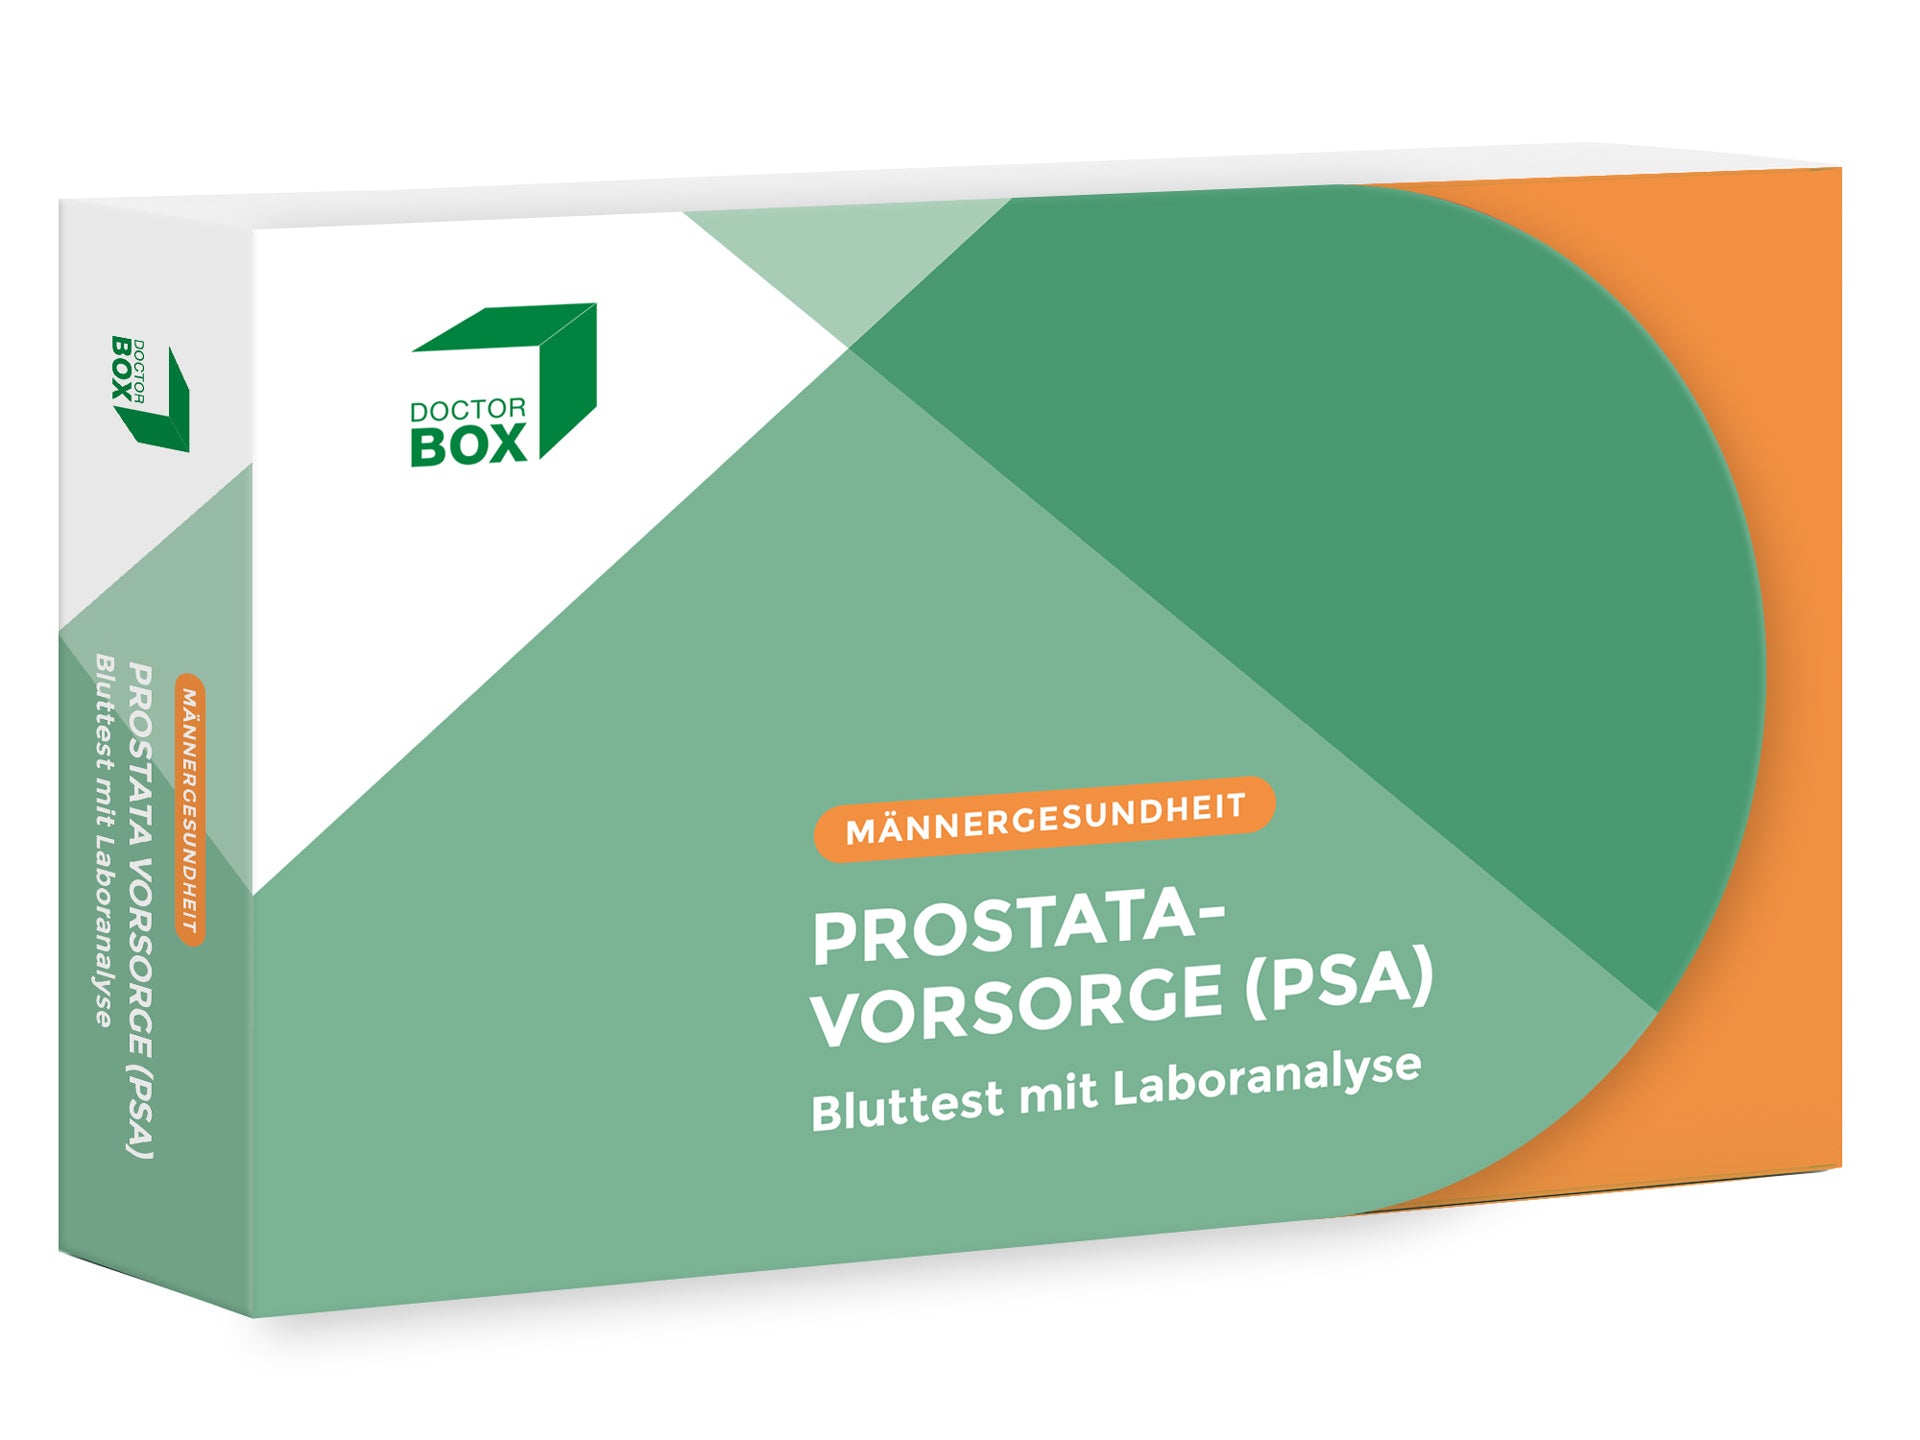 Verpackung des PSA Tests für die Männergesundheit mit der Aufschrift Prostata-Vorsorge Bluttest mit Laboranalyse.